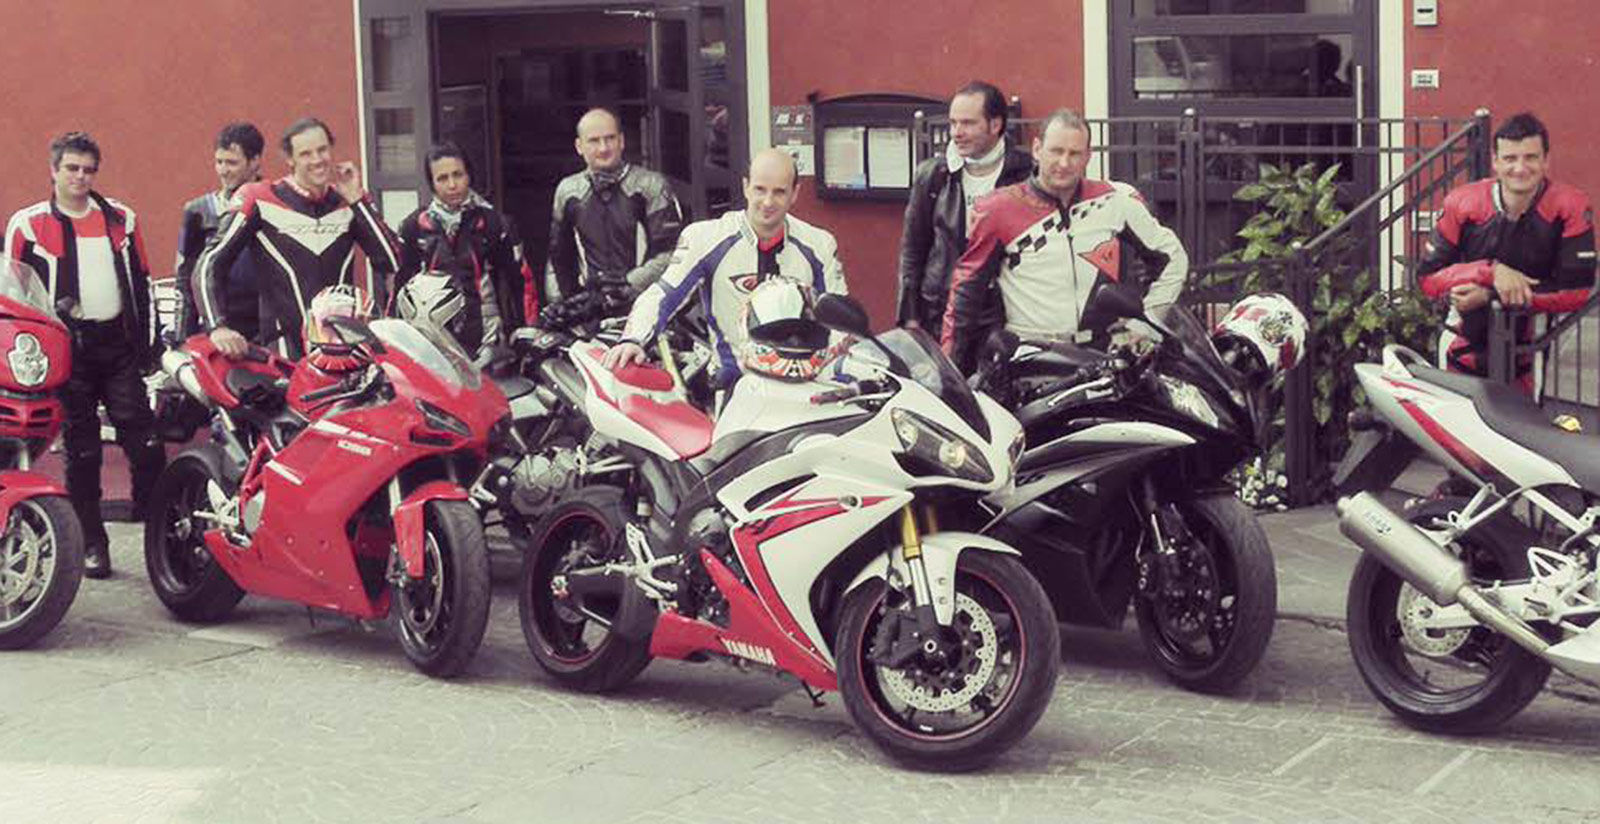 Trentino motorbike touring 2